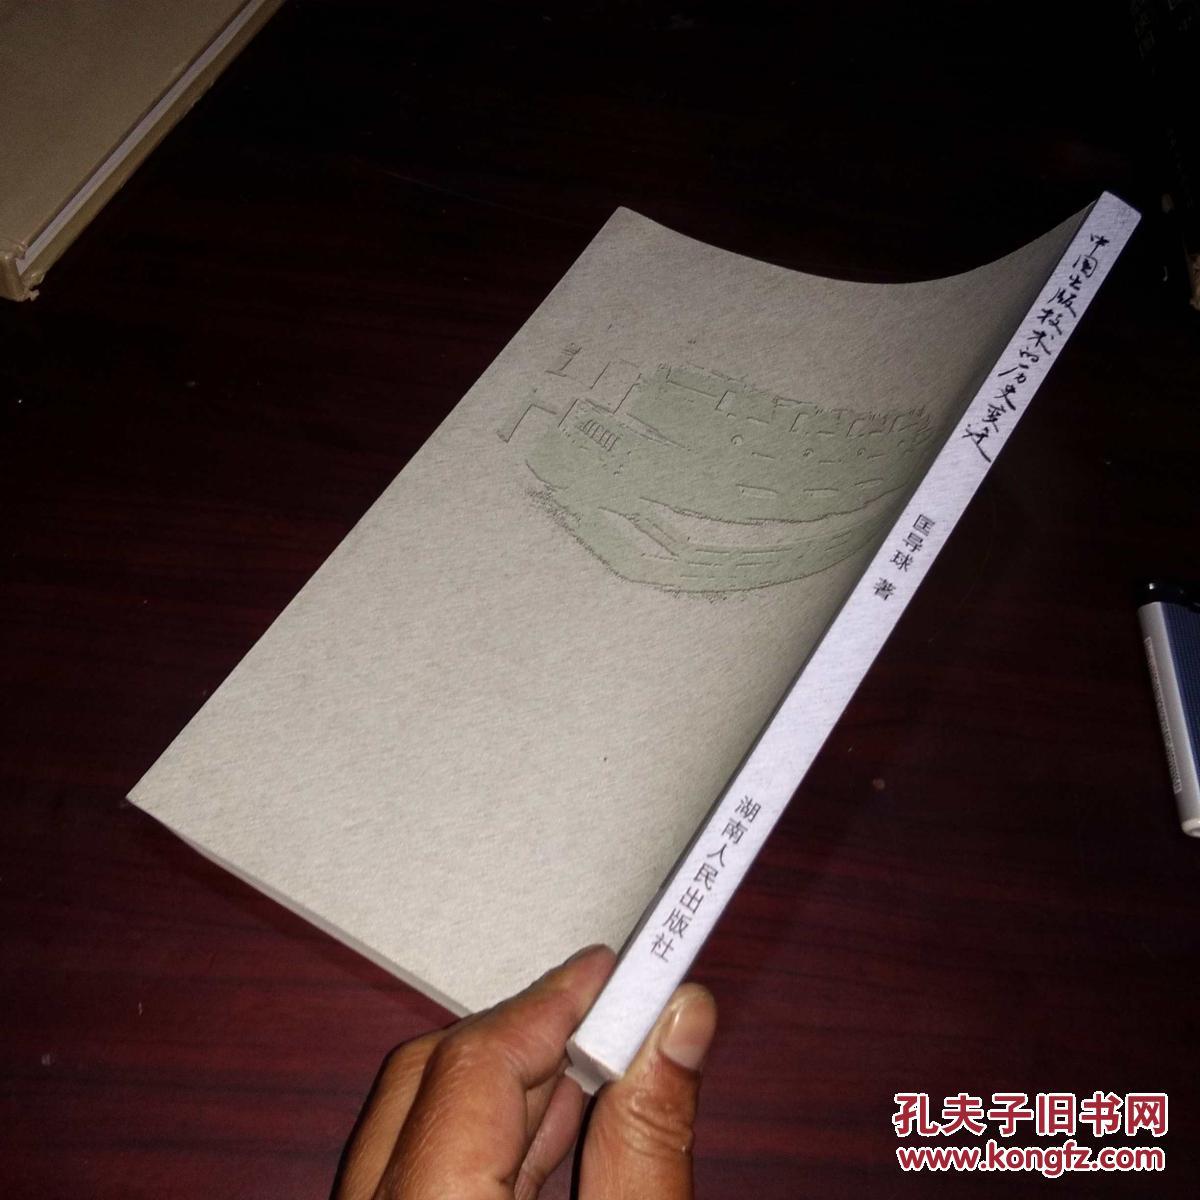 中国出版技术的历史变迁 签名本作者匡导球签赠钤印